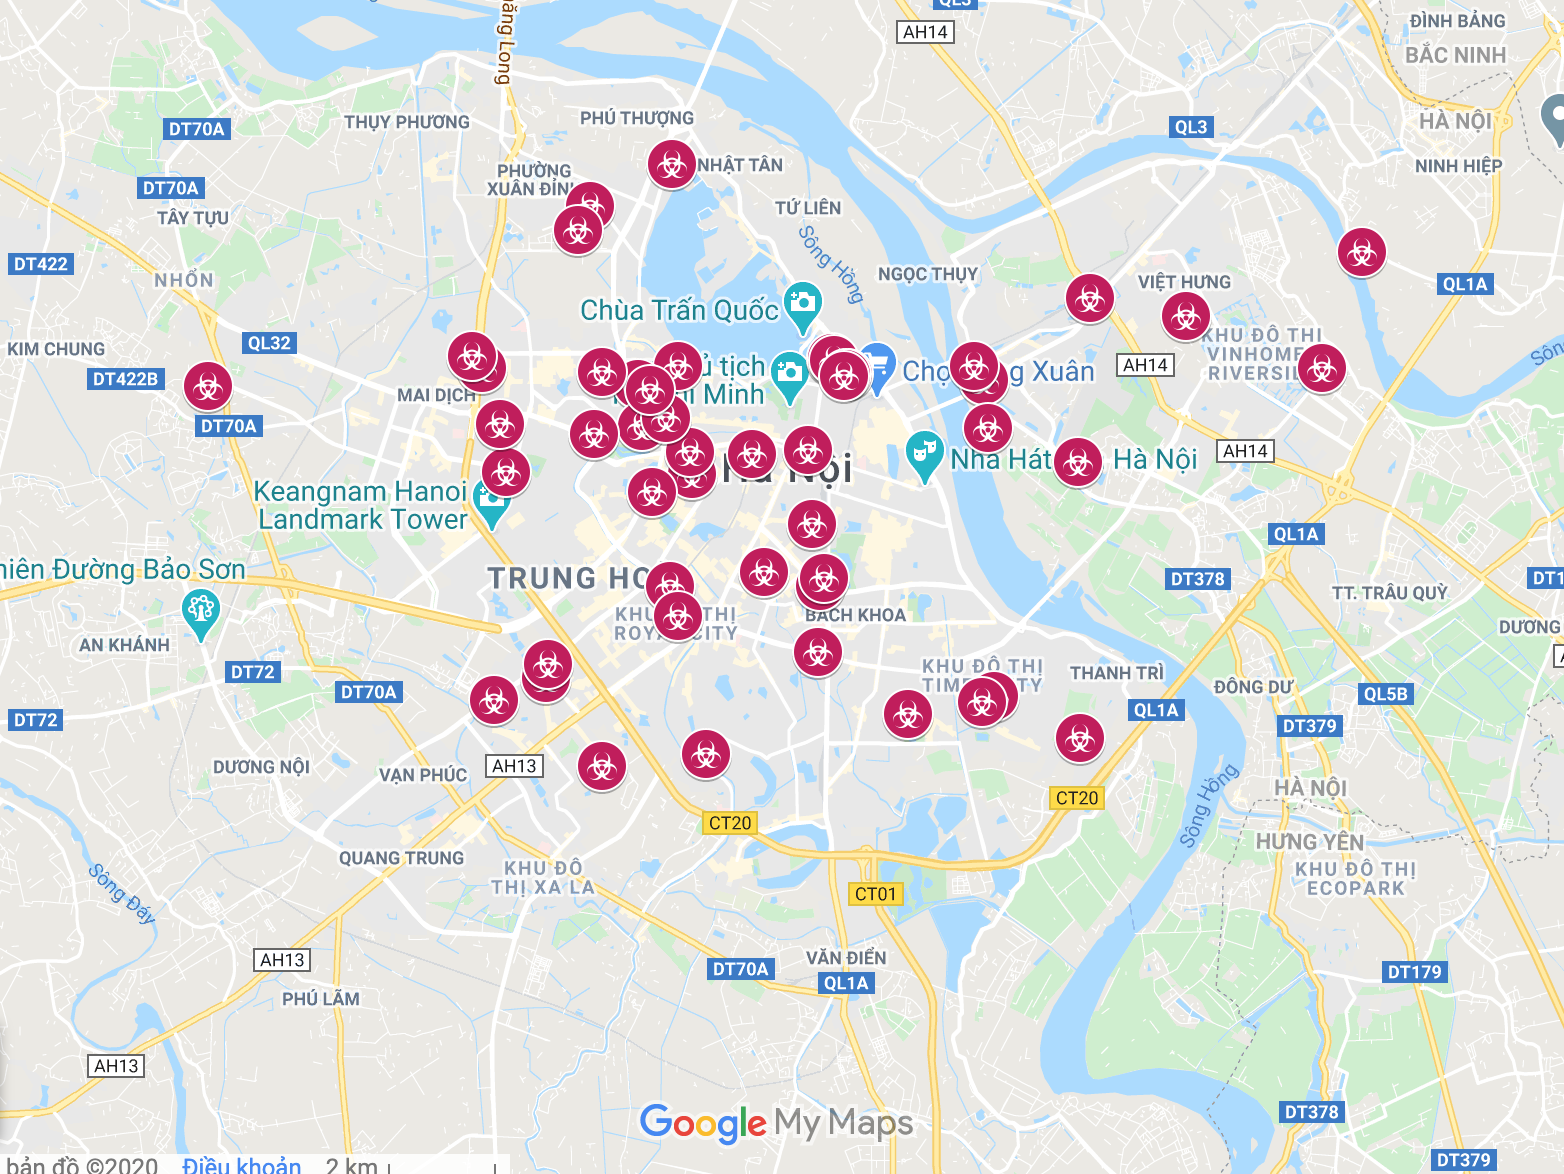 Xem bản đồ giao thông thành phố Hà Nội trên Google Maps